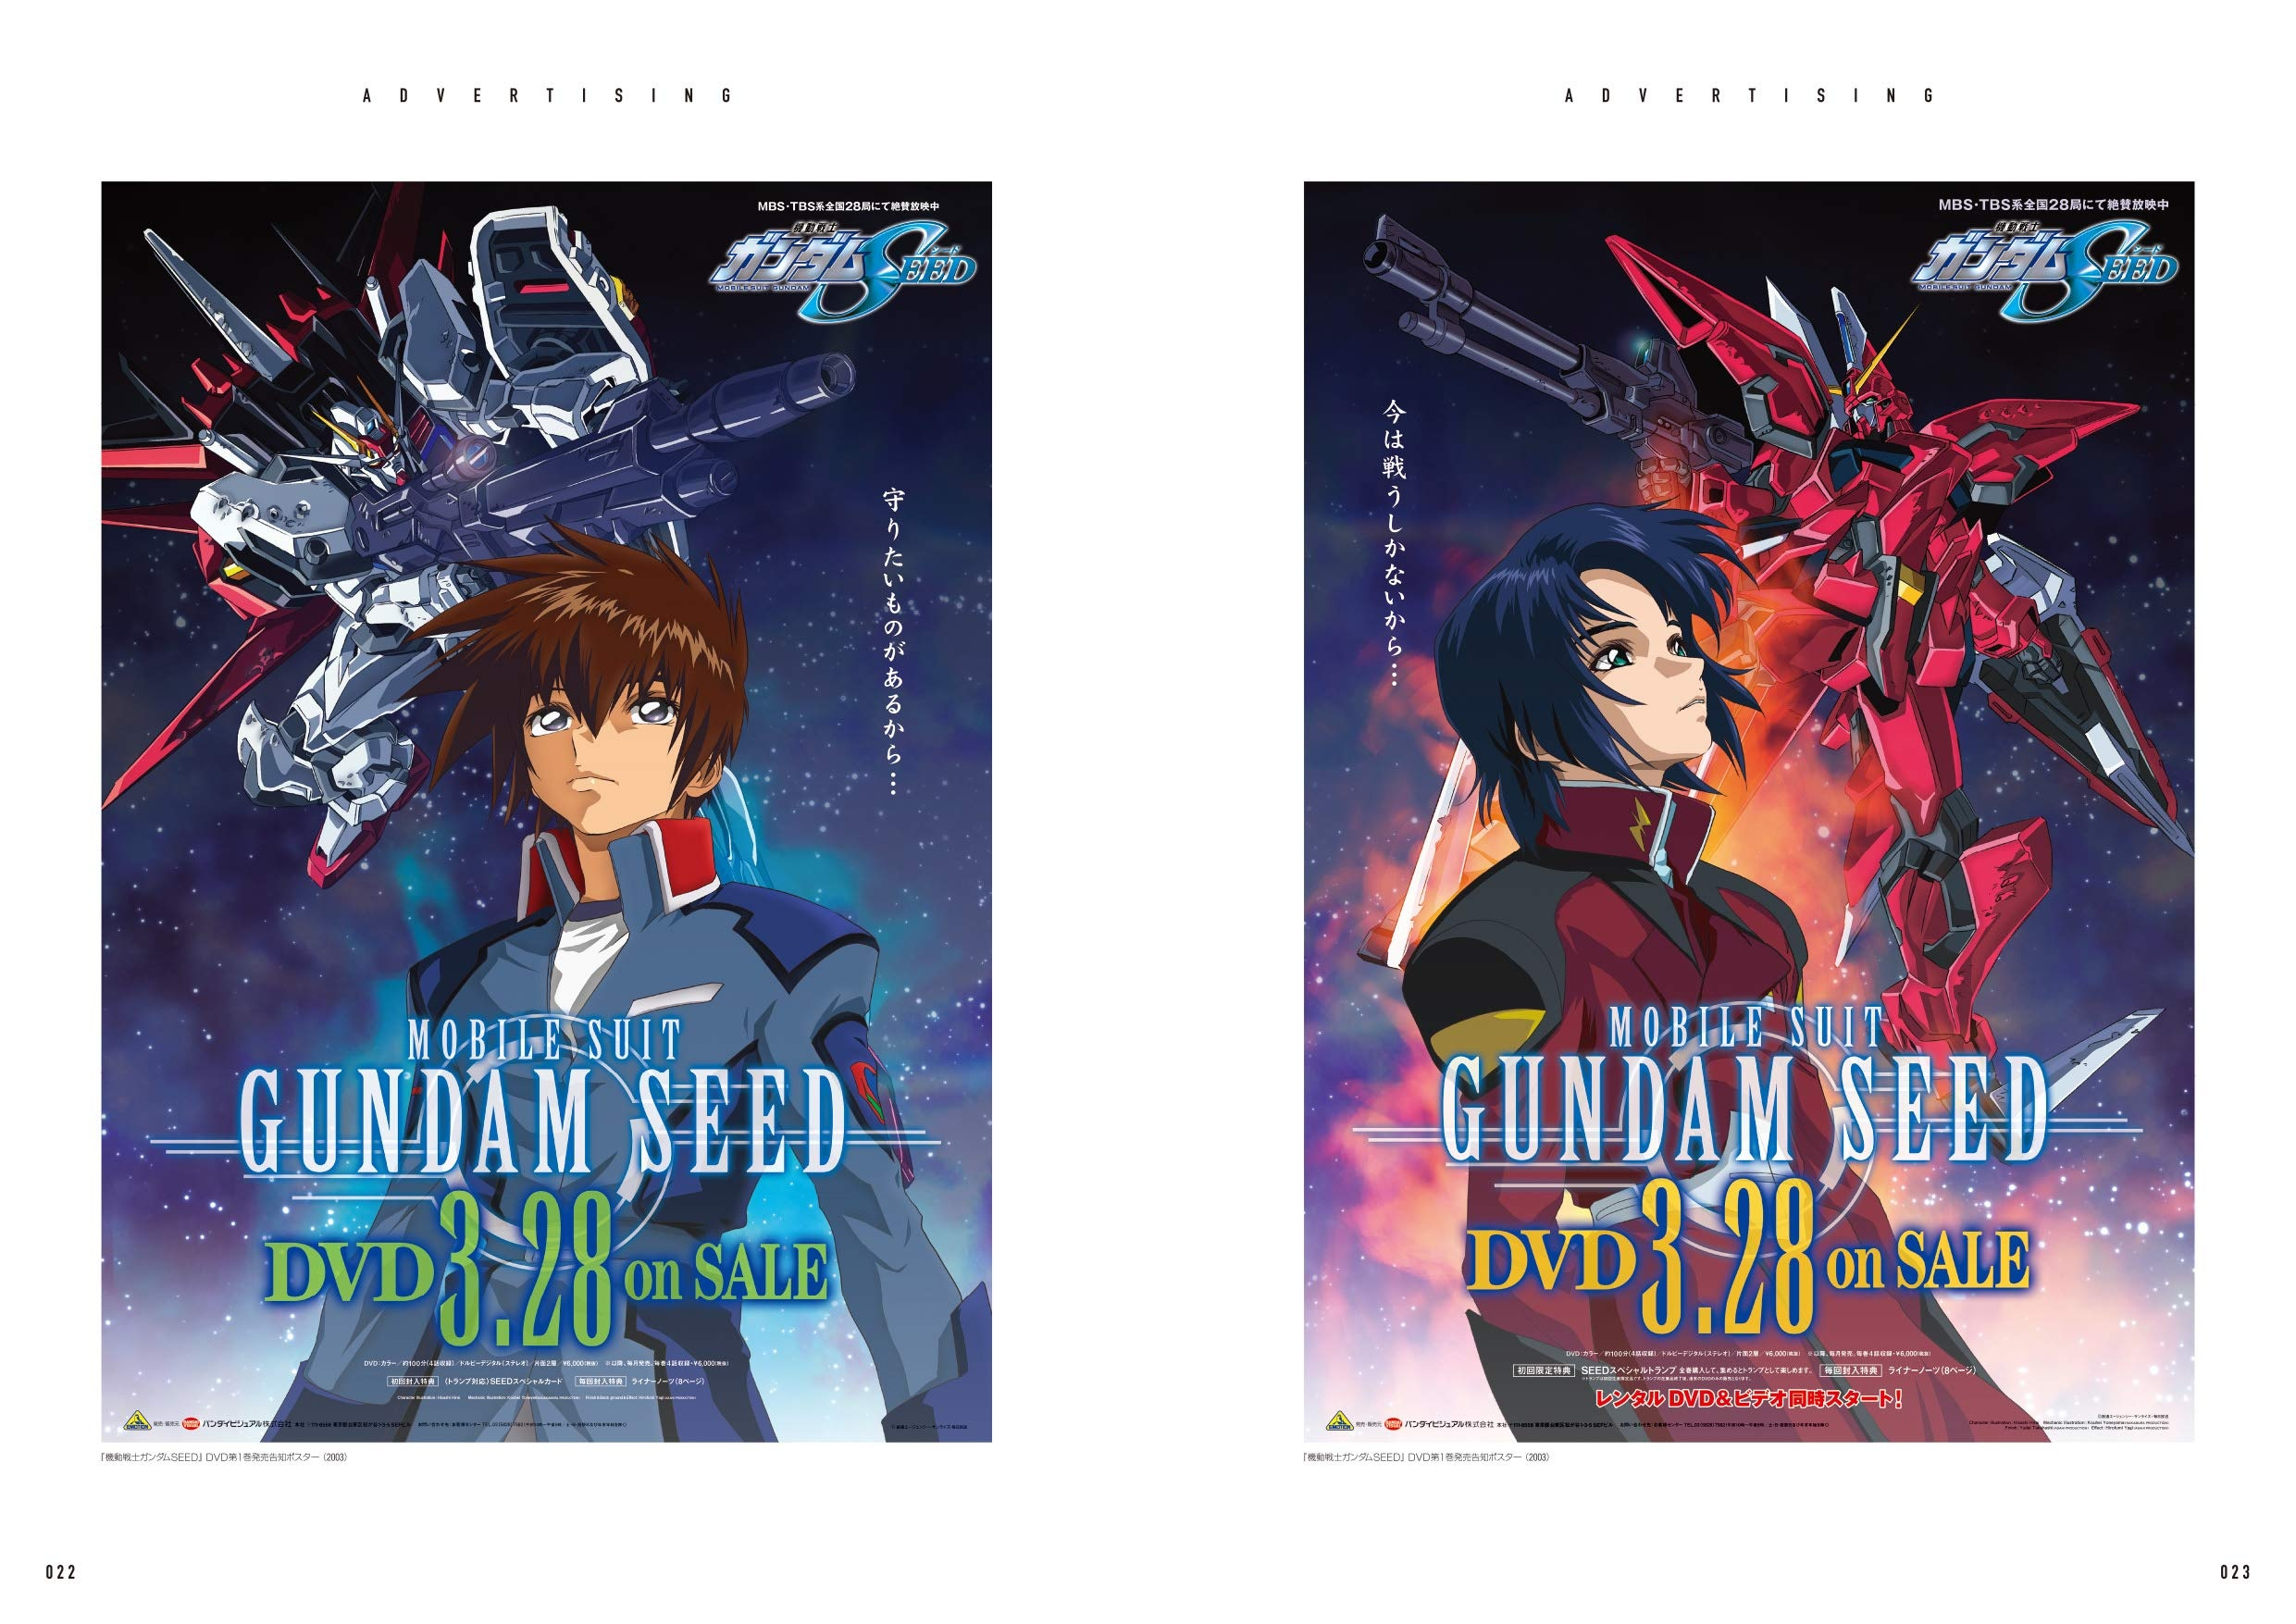 “Página interior del libro ‘Dabhand Designs Gundam Commercial Design 1999-2019’ mostrando varias ilustraciones de